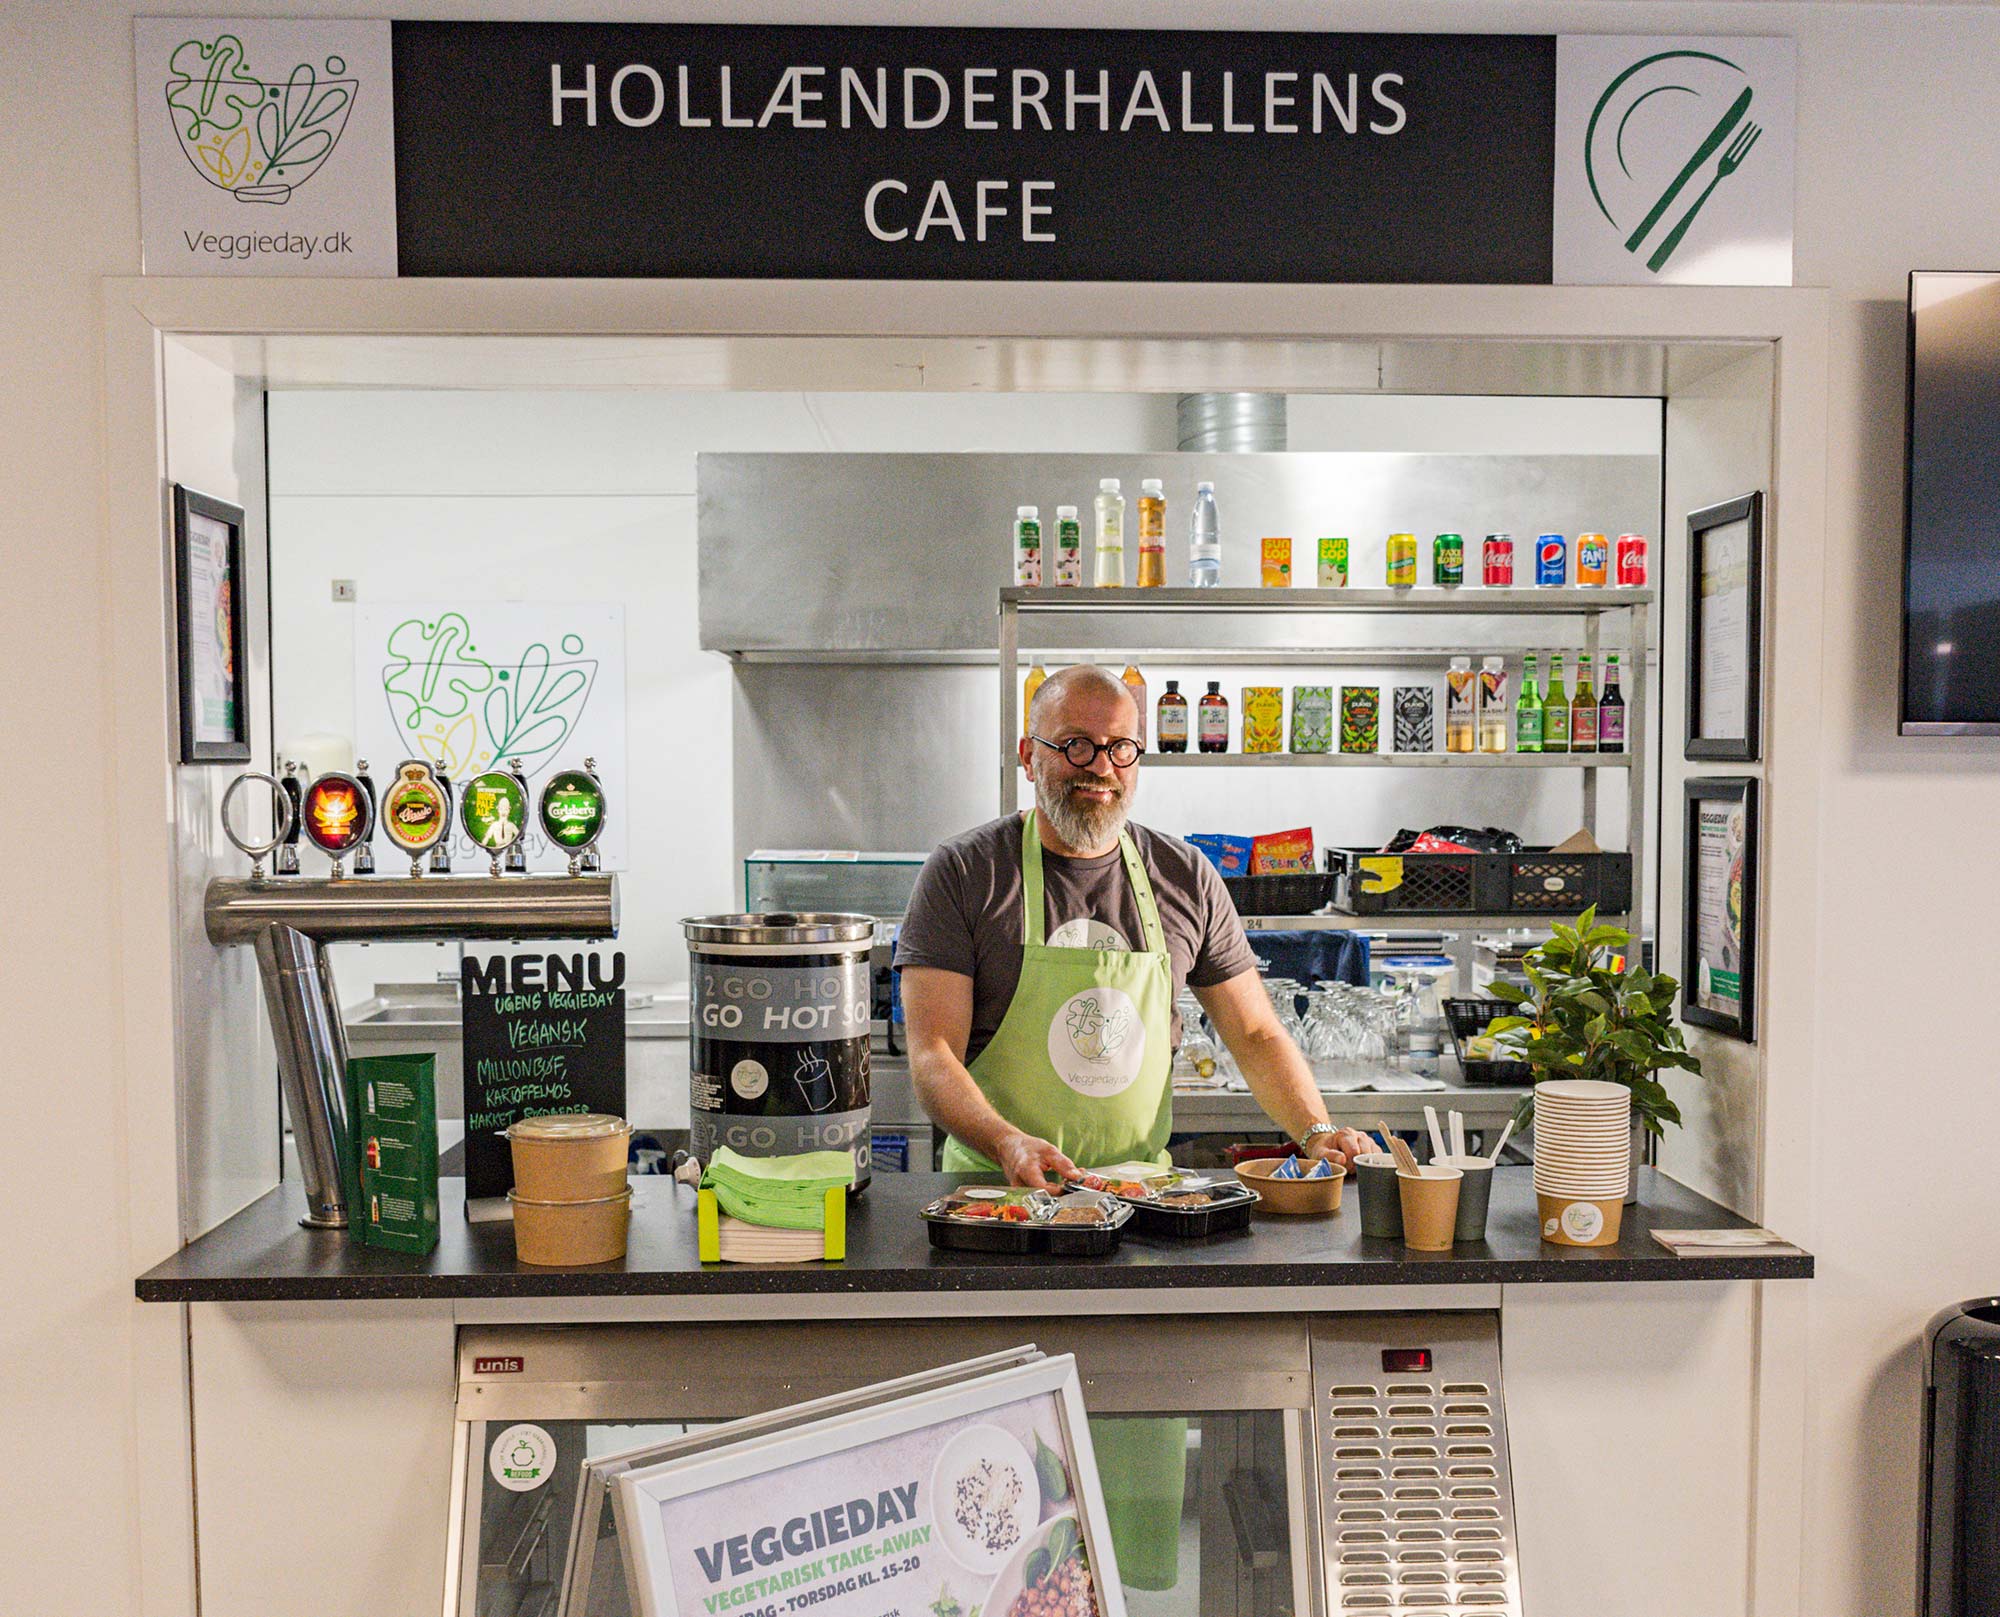 Caféen i Hollænderhallen åbner efter sommerferien. Foto: Hans Jacob Sørensen.